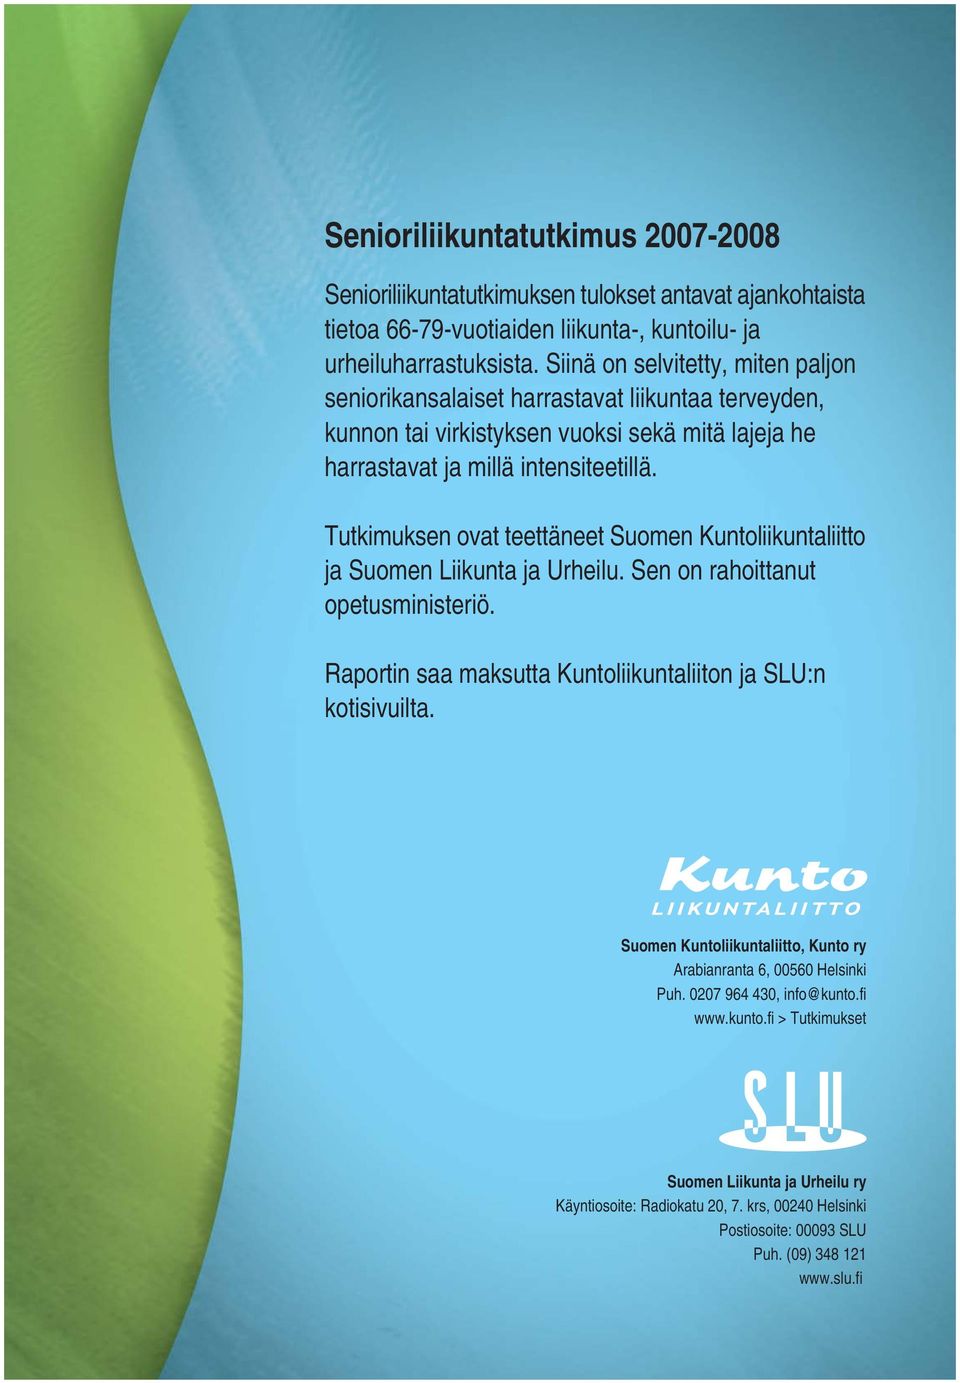 Tutkimuksen ovat teettäneet Suomen Kuntoliikuntaliitto ja Suomen Liikunta ja Urheilu. Sen on rahoittanut opetusministeriö. Raportin saa maksutta Kuntoliikuntaliiton ja SLU:n kotisivuilta.